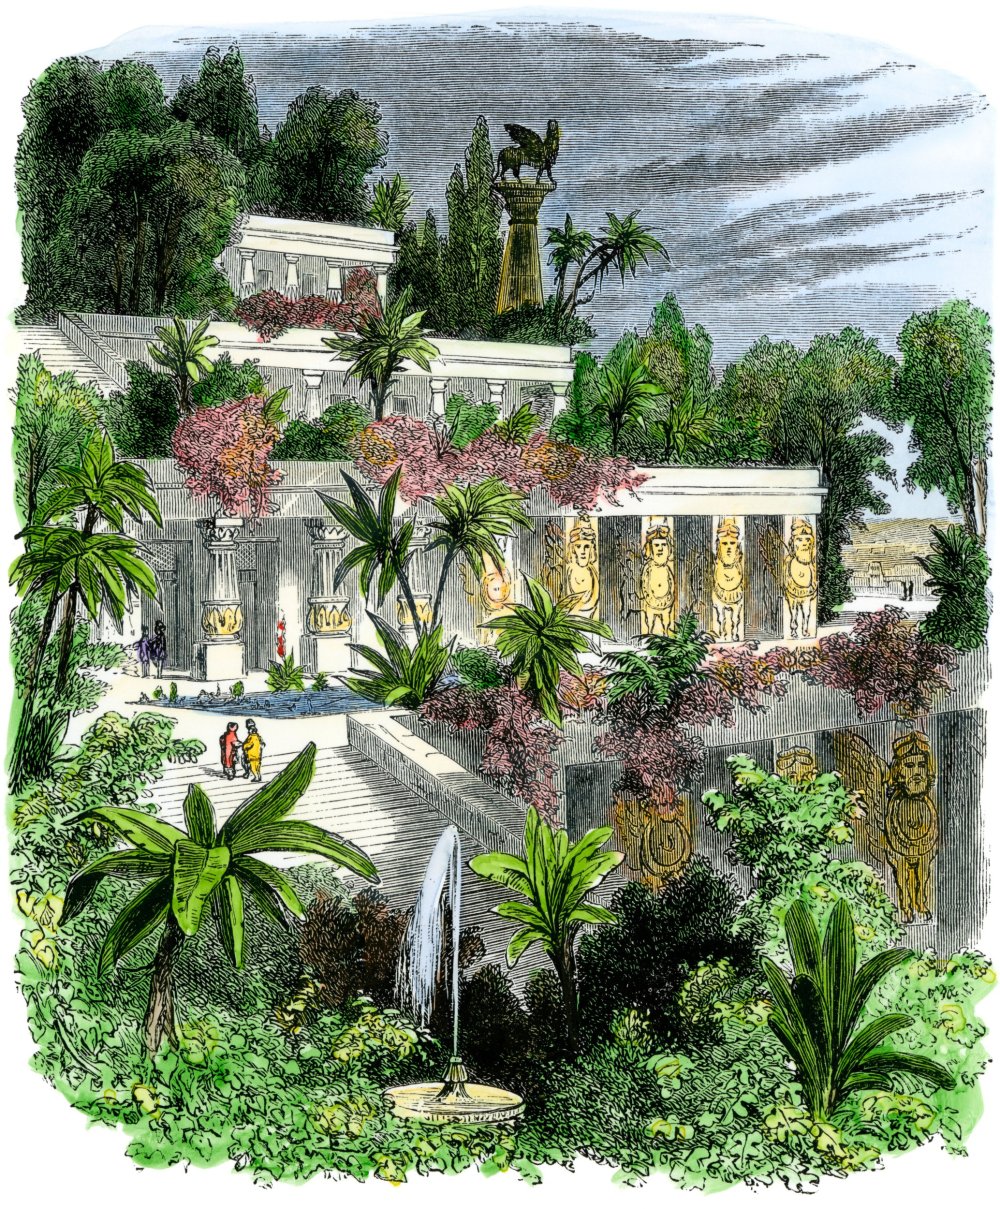 Висячие сады Семирамиды (Вавилон (Ирак))